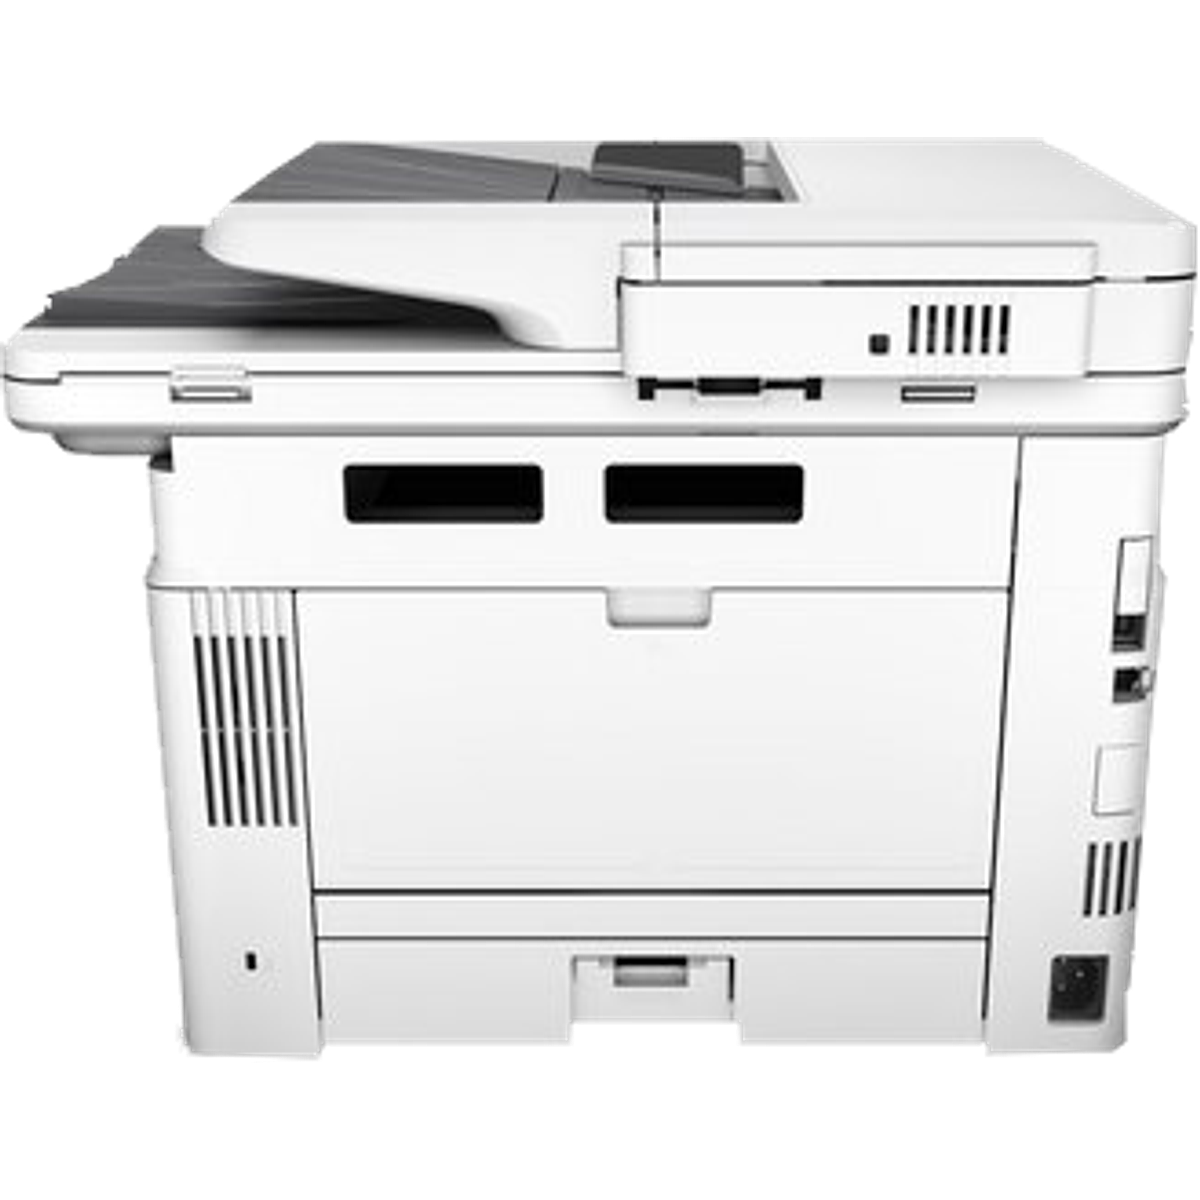 Impresora multifuncional hp LaserJet pro m426dw, laser, 8...